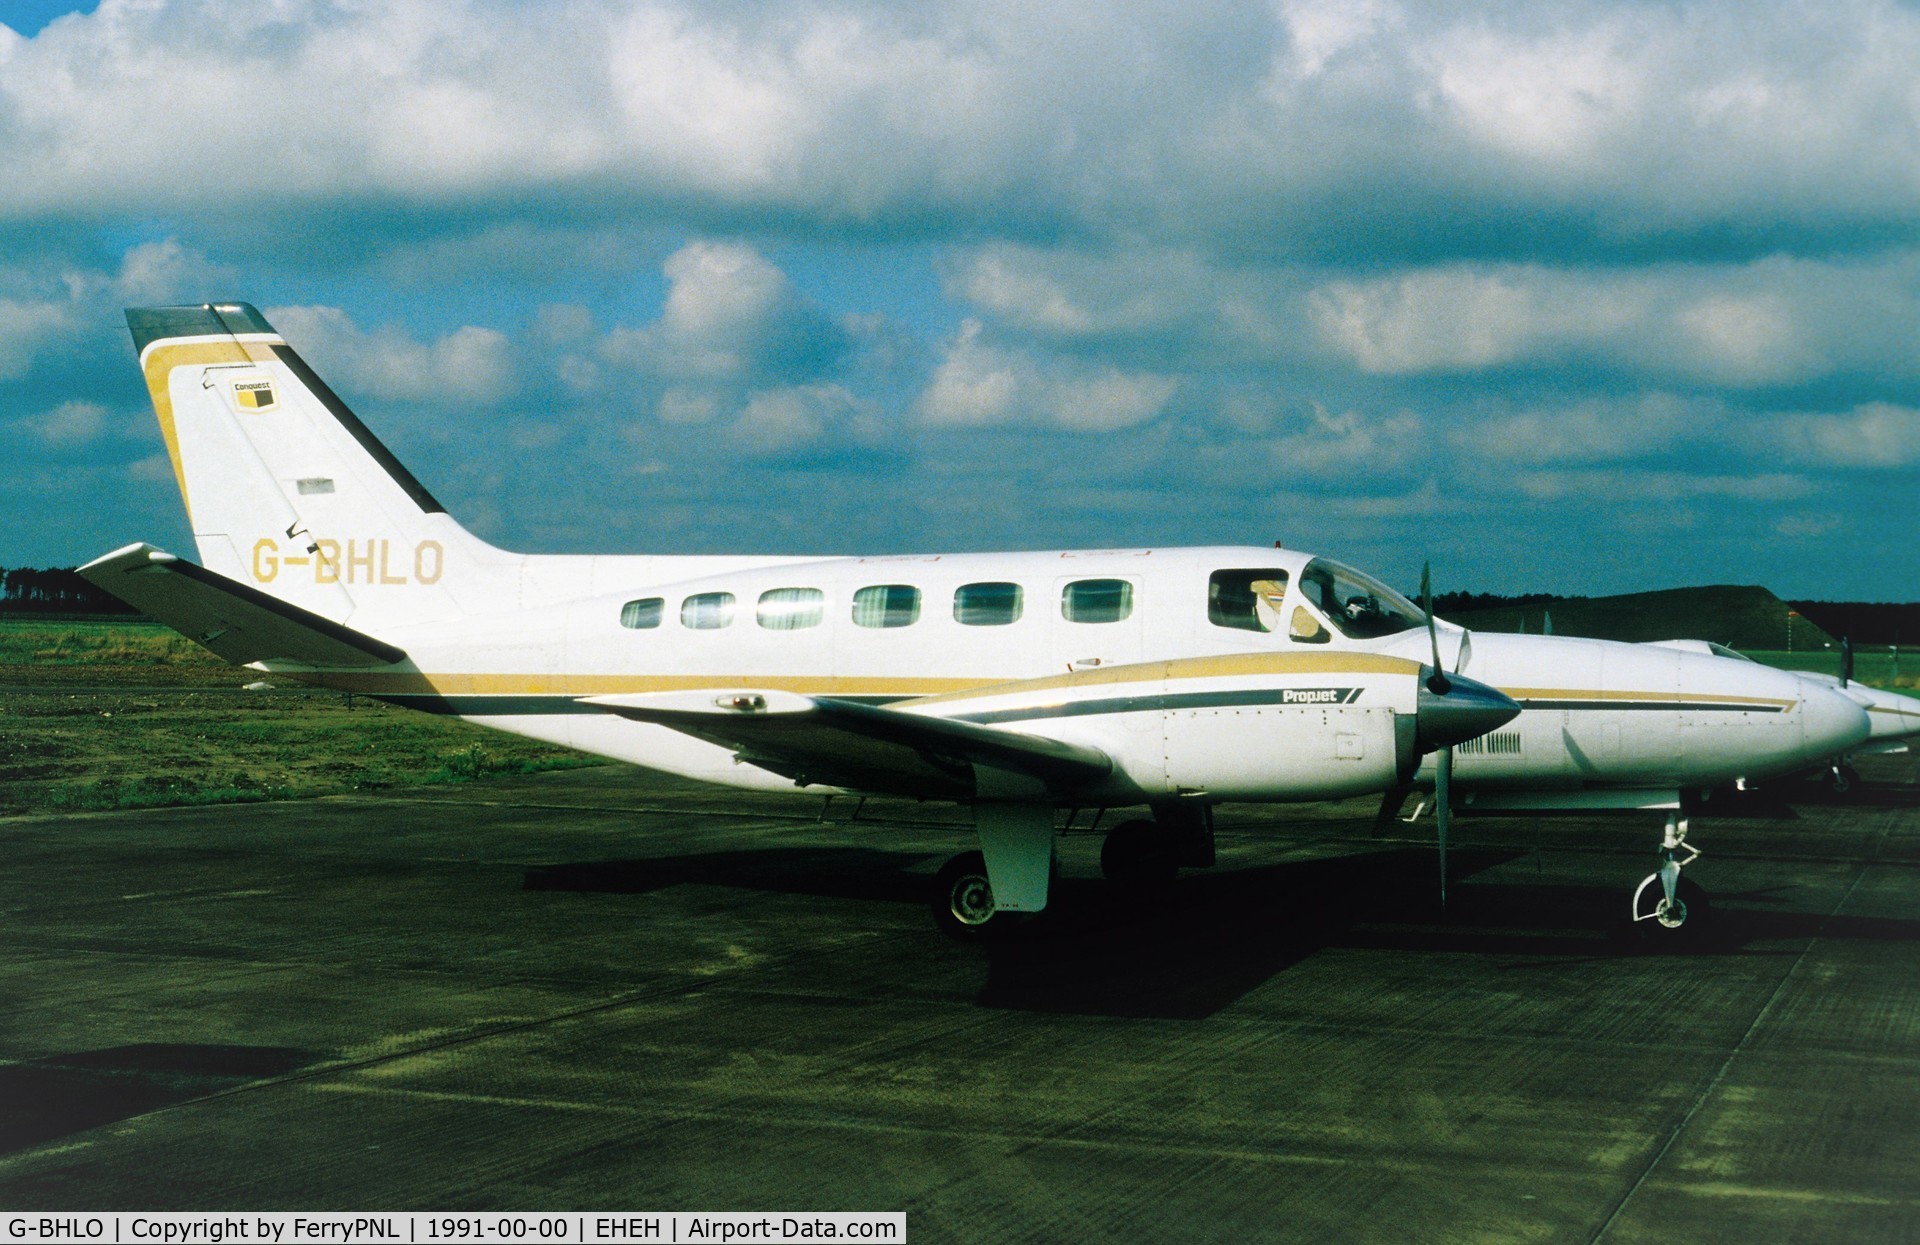 G-BHLO, 1981 Cessna 441 Conquest II C/N 441-0226, McAlpine Aviation Ltd Ce441